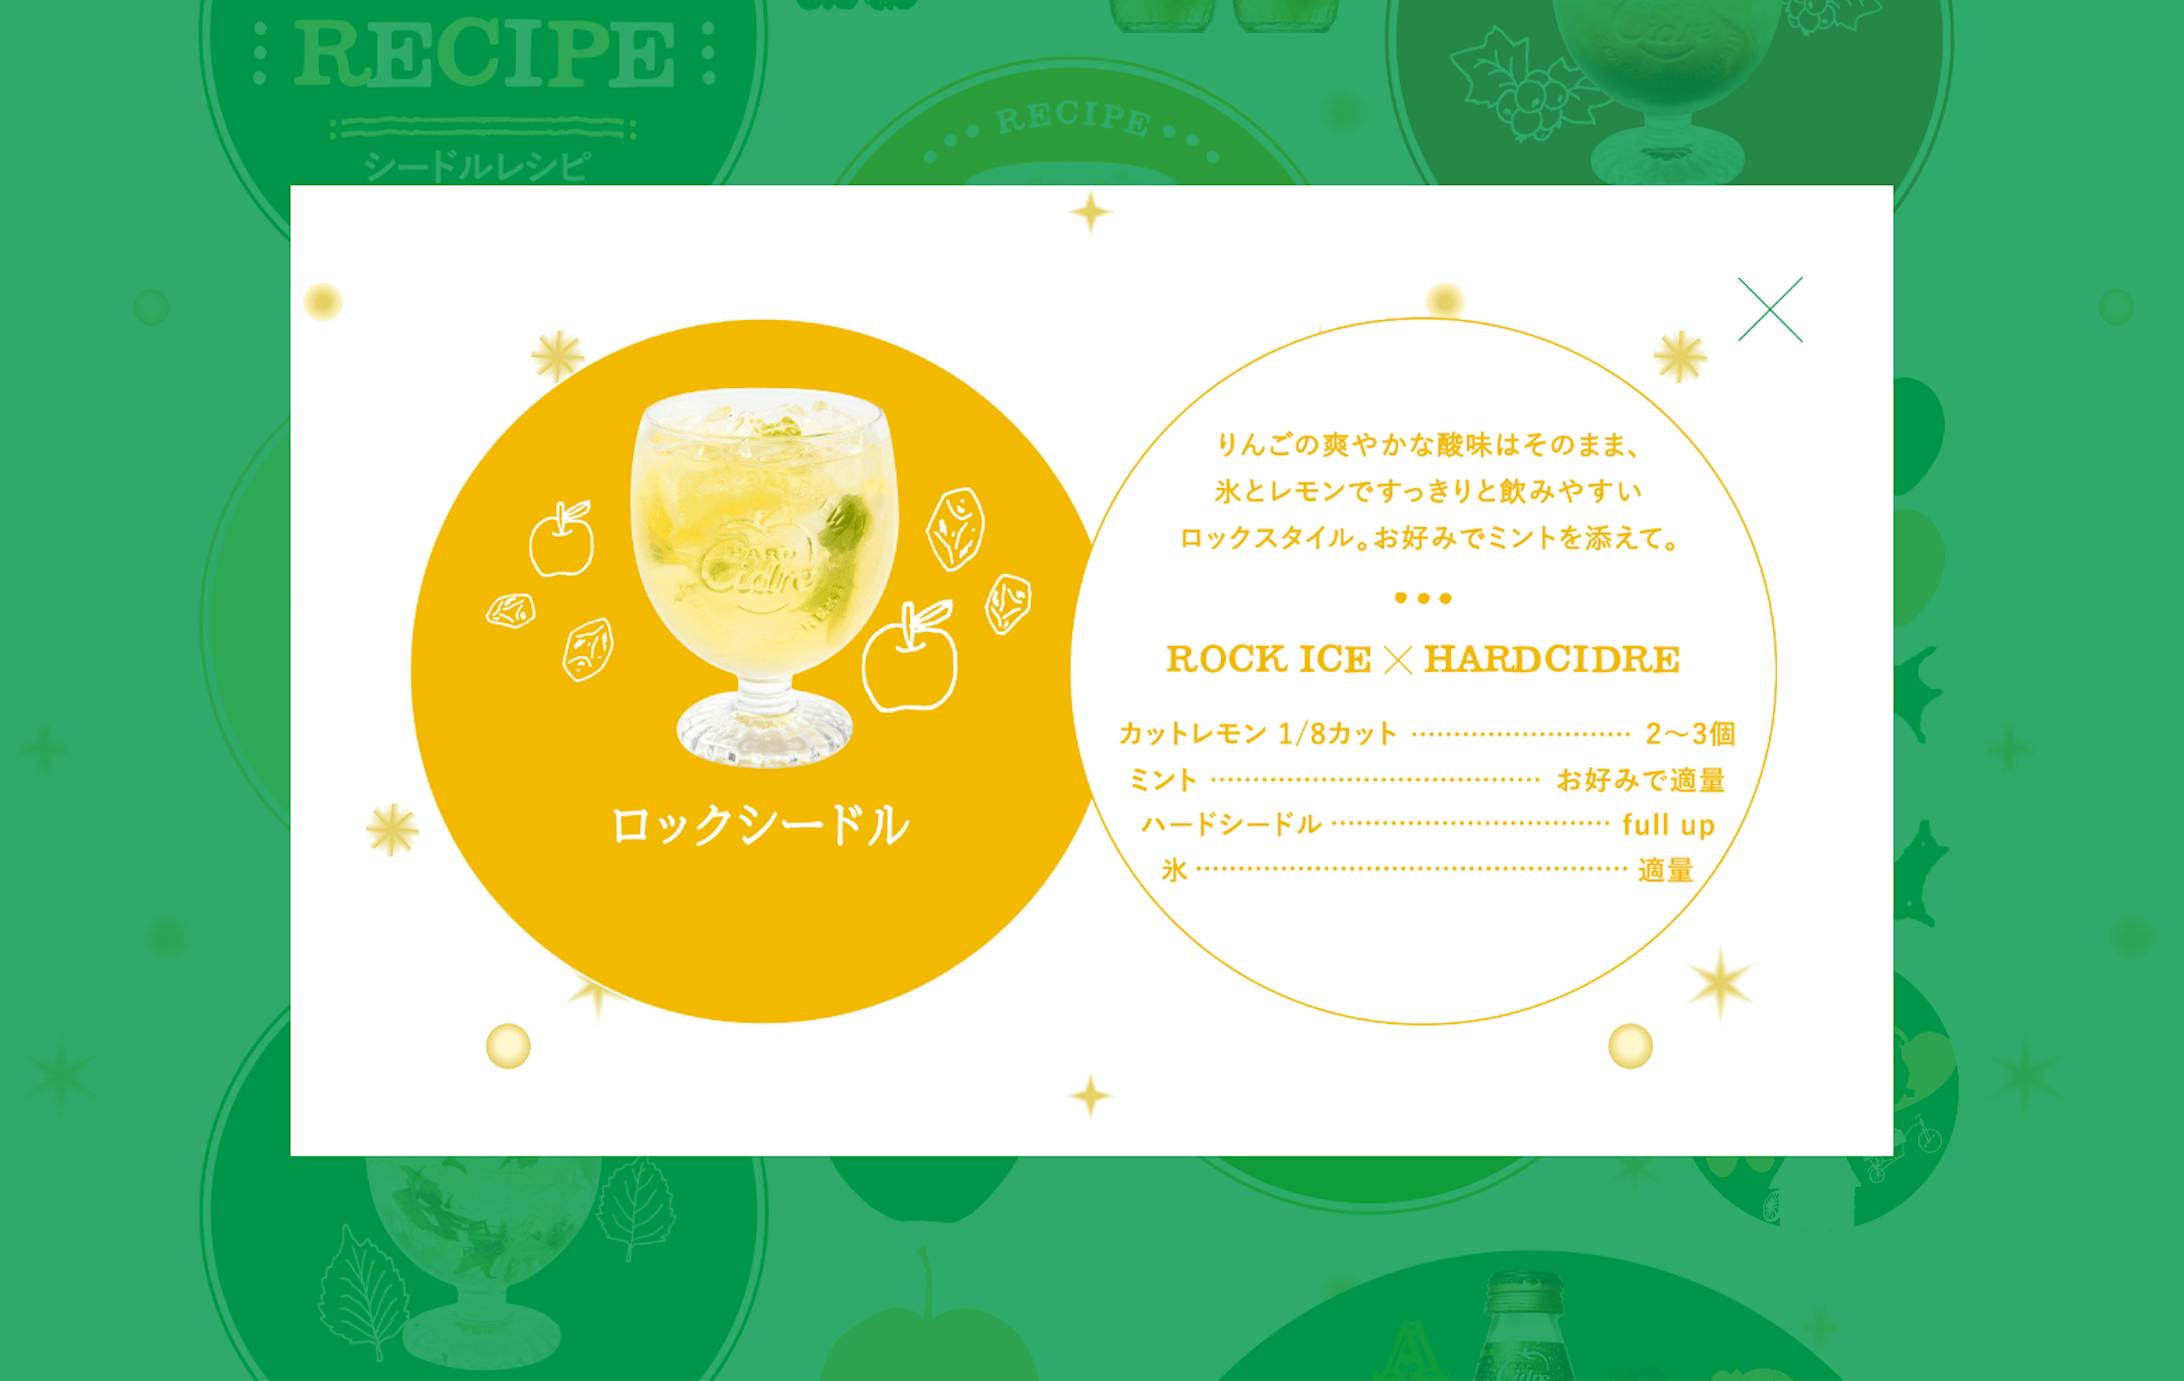  キリン「Hard Cidre」 -5